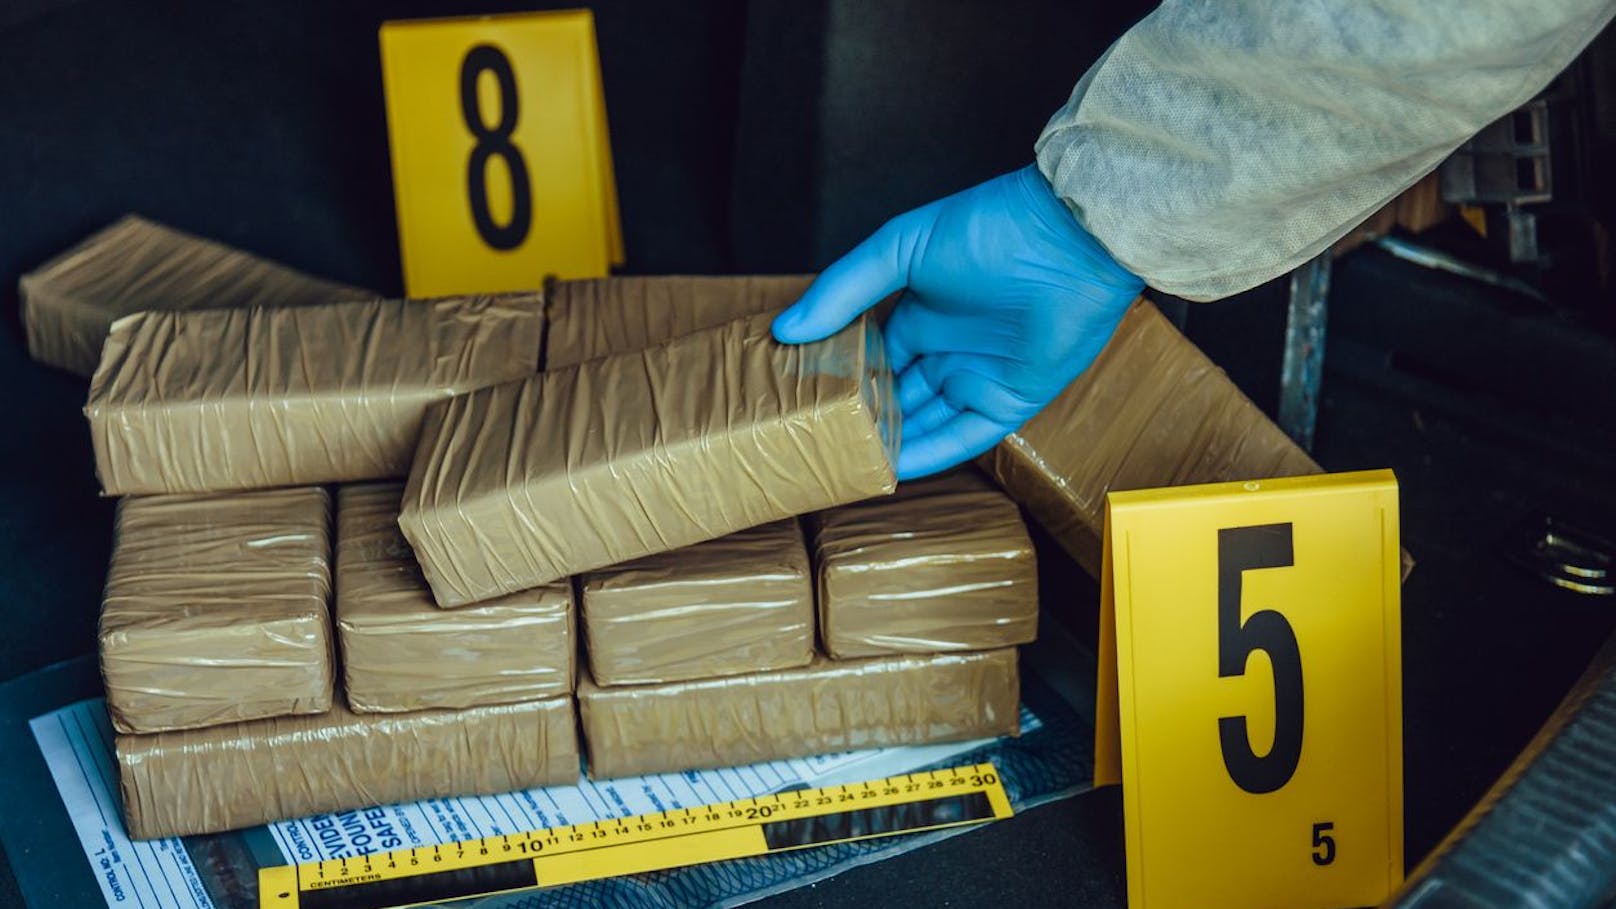 Rekordfund! Drogenfahnder sichern 35 Tonnen Kokain